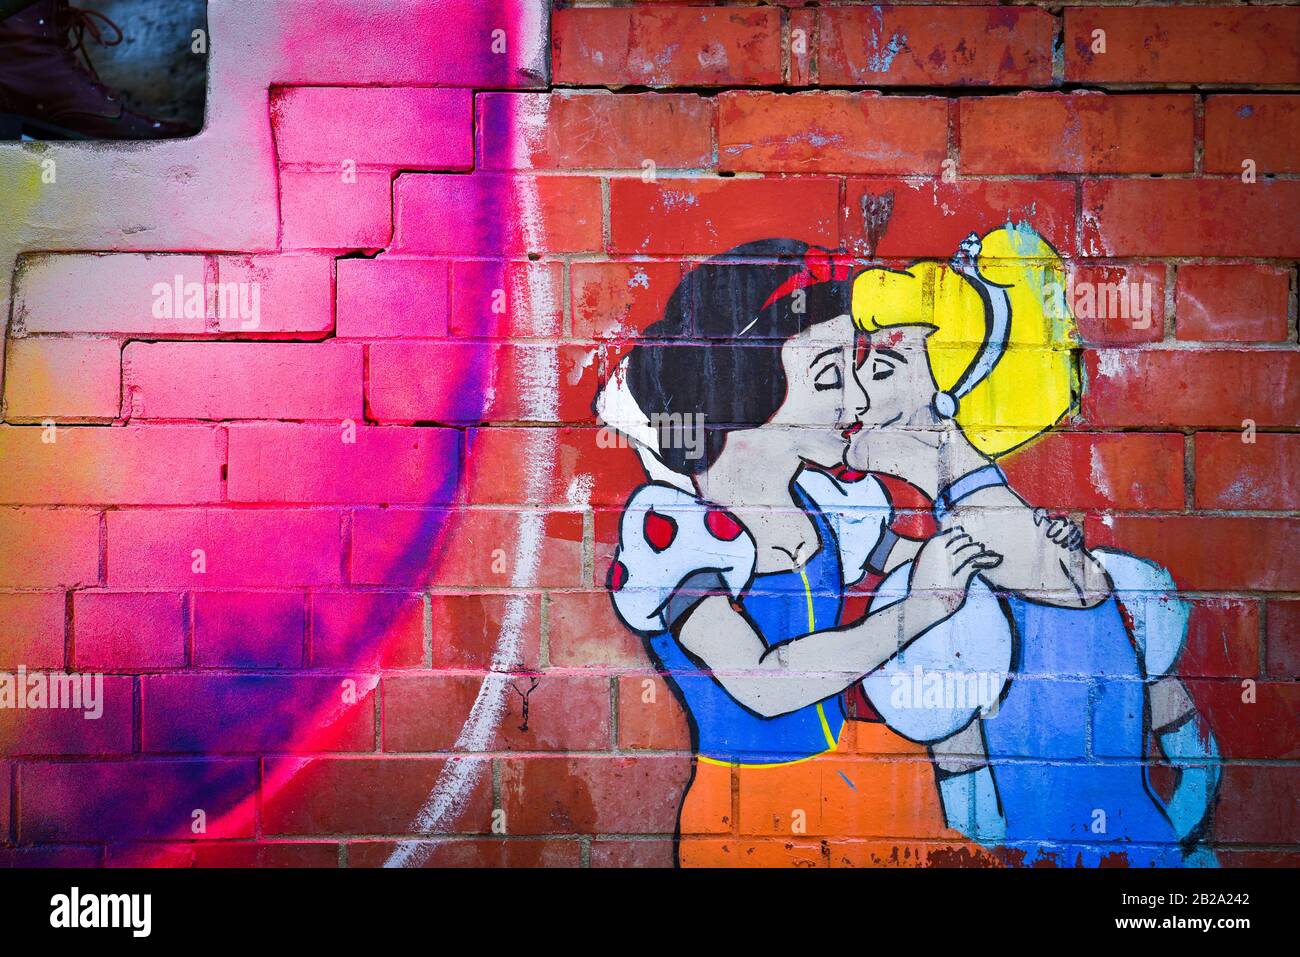 Graffiti on the wall in Melbourne, Australia Stock Photo